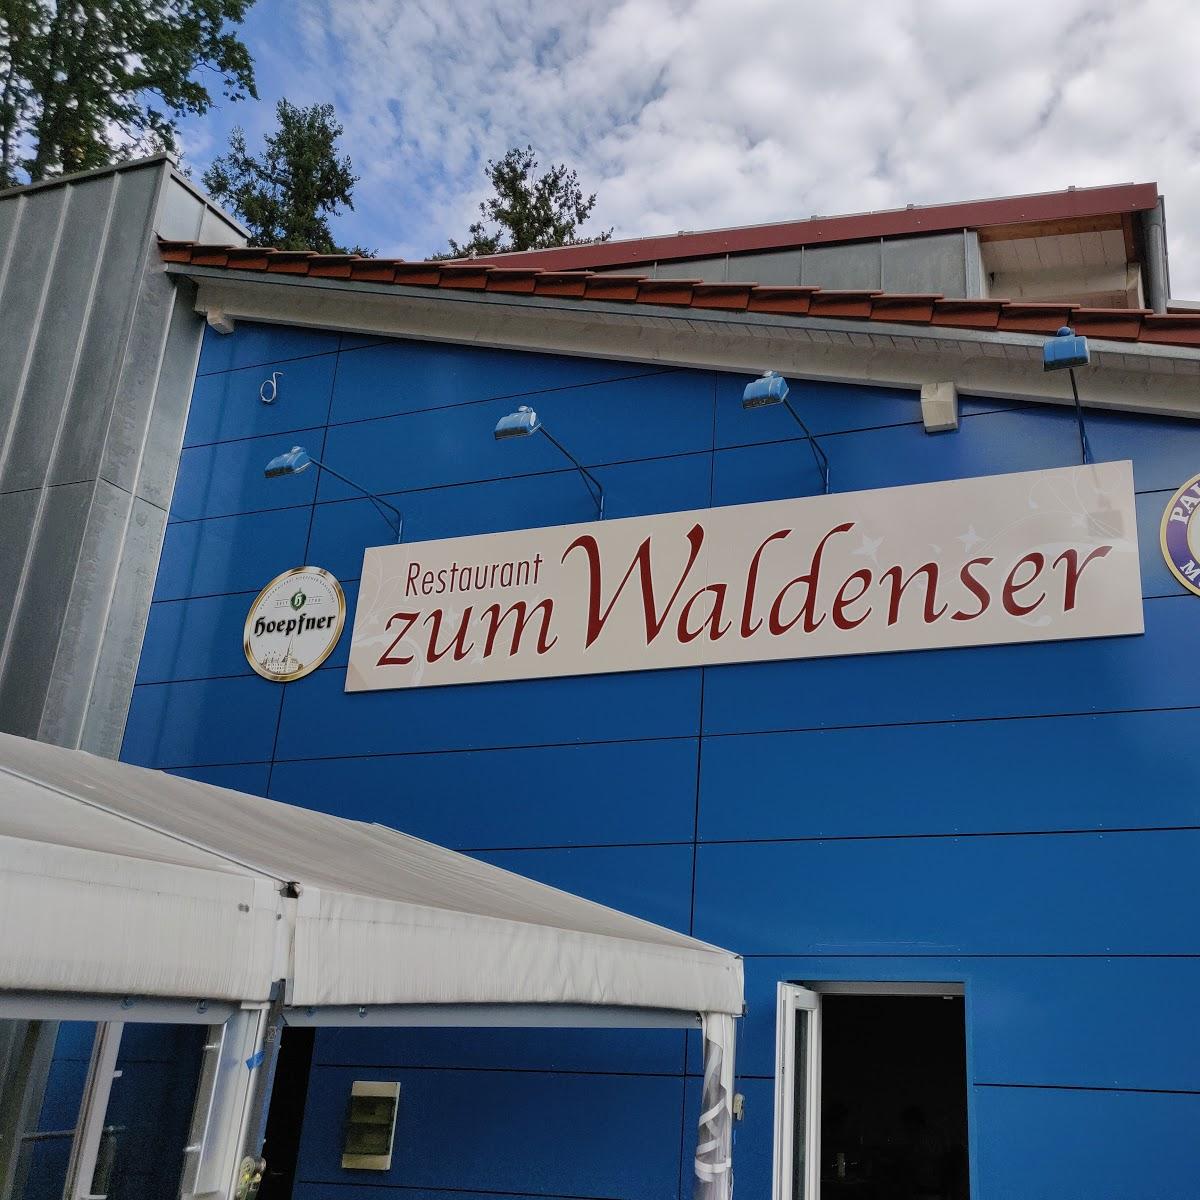 Restaurant "No Uno Waldenser" in Karlsbad